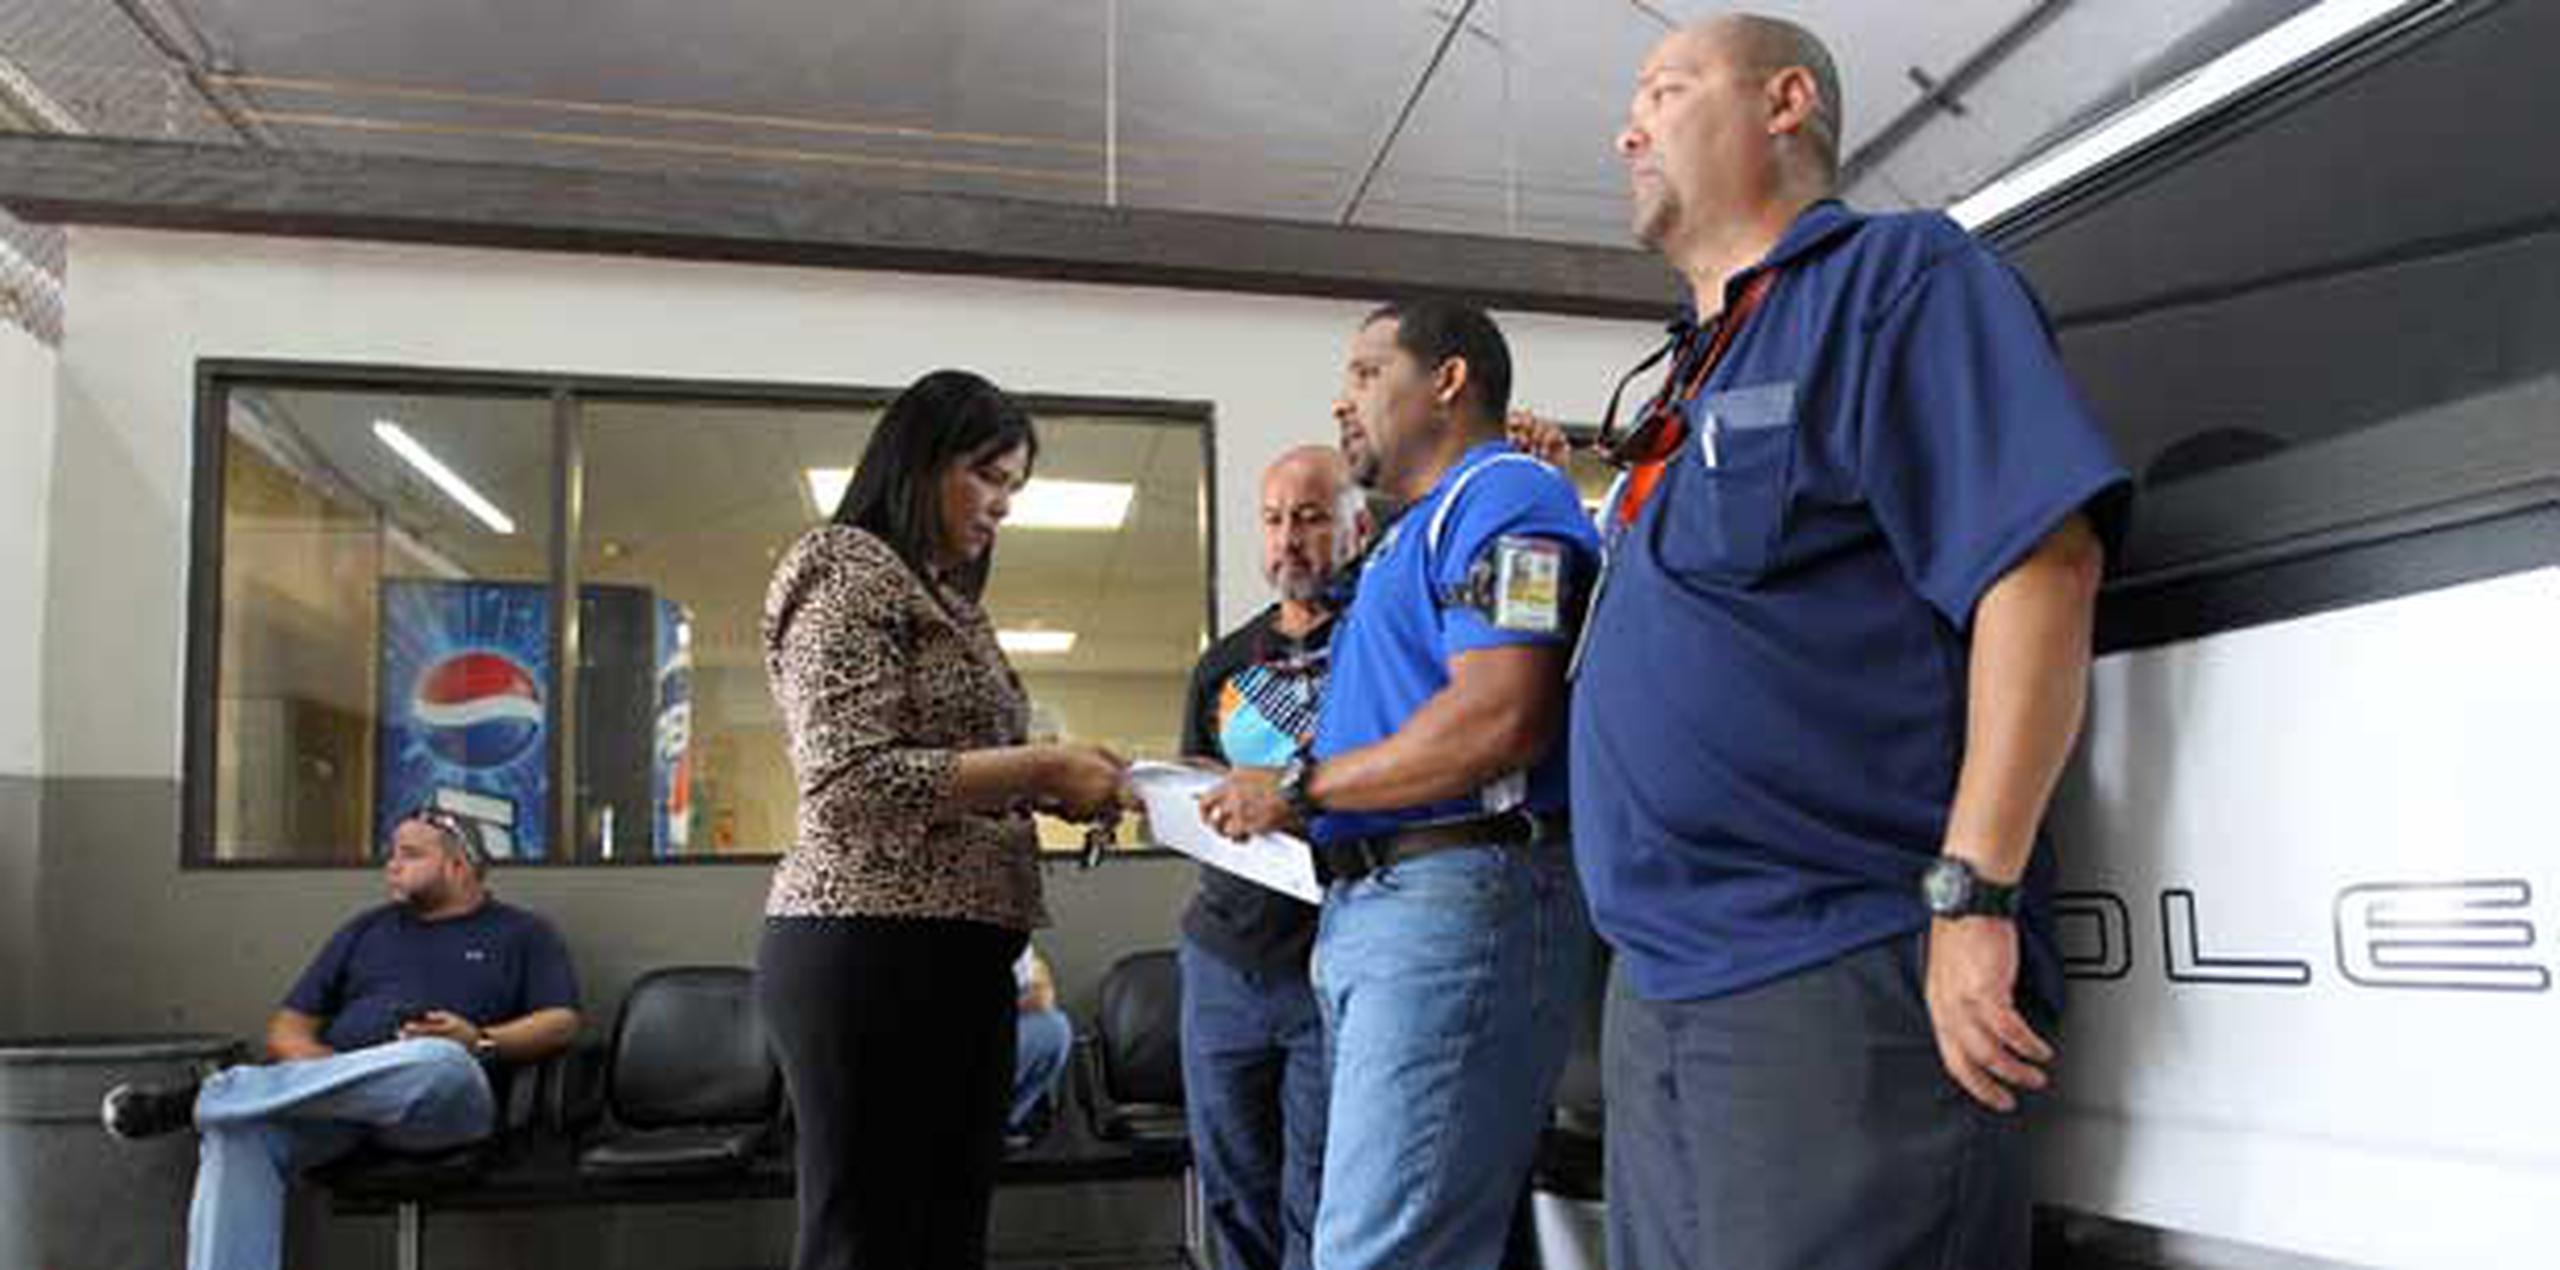 Astrid Rosario, delegada de la Unión conversa con los empleados Arturo Santini, Rafael Febres, William Laldel. (teresa.canino@gfrmedia.com)